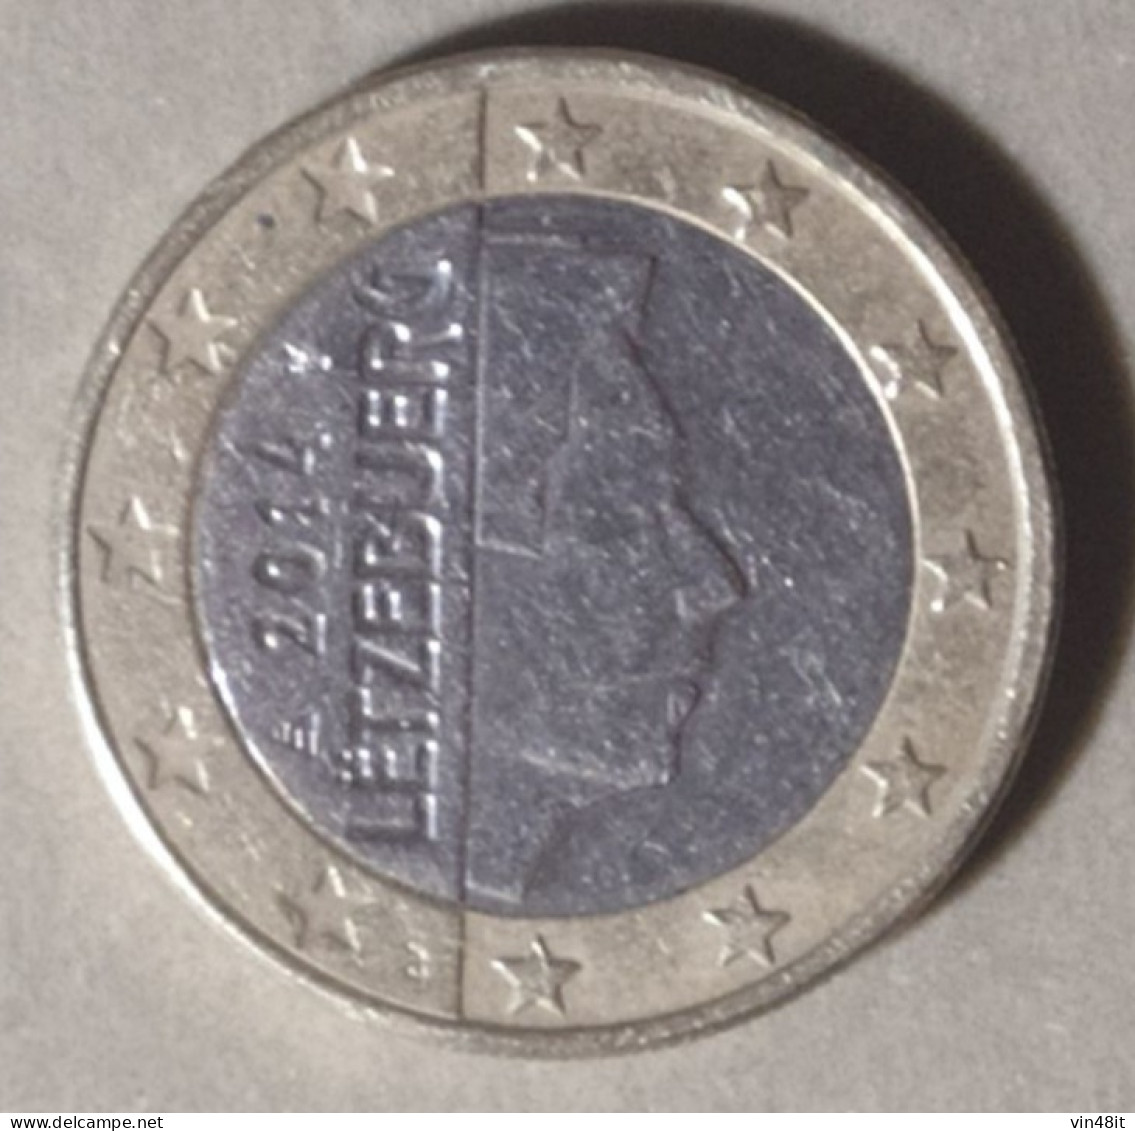 2014 -  LUSSEMBURGO  - MONETA IN EURO - DEL VALORE DI 1,00 EURO - USATA - Luxemburgo